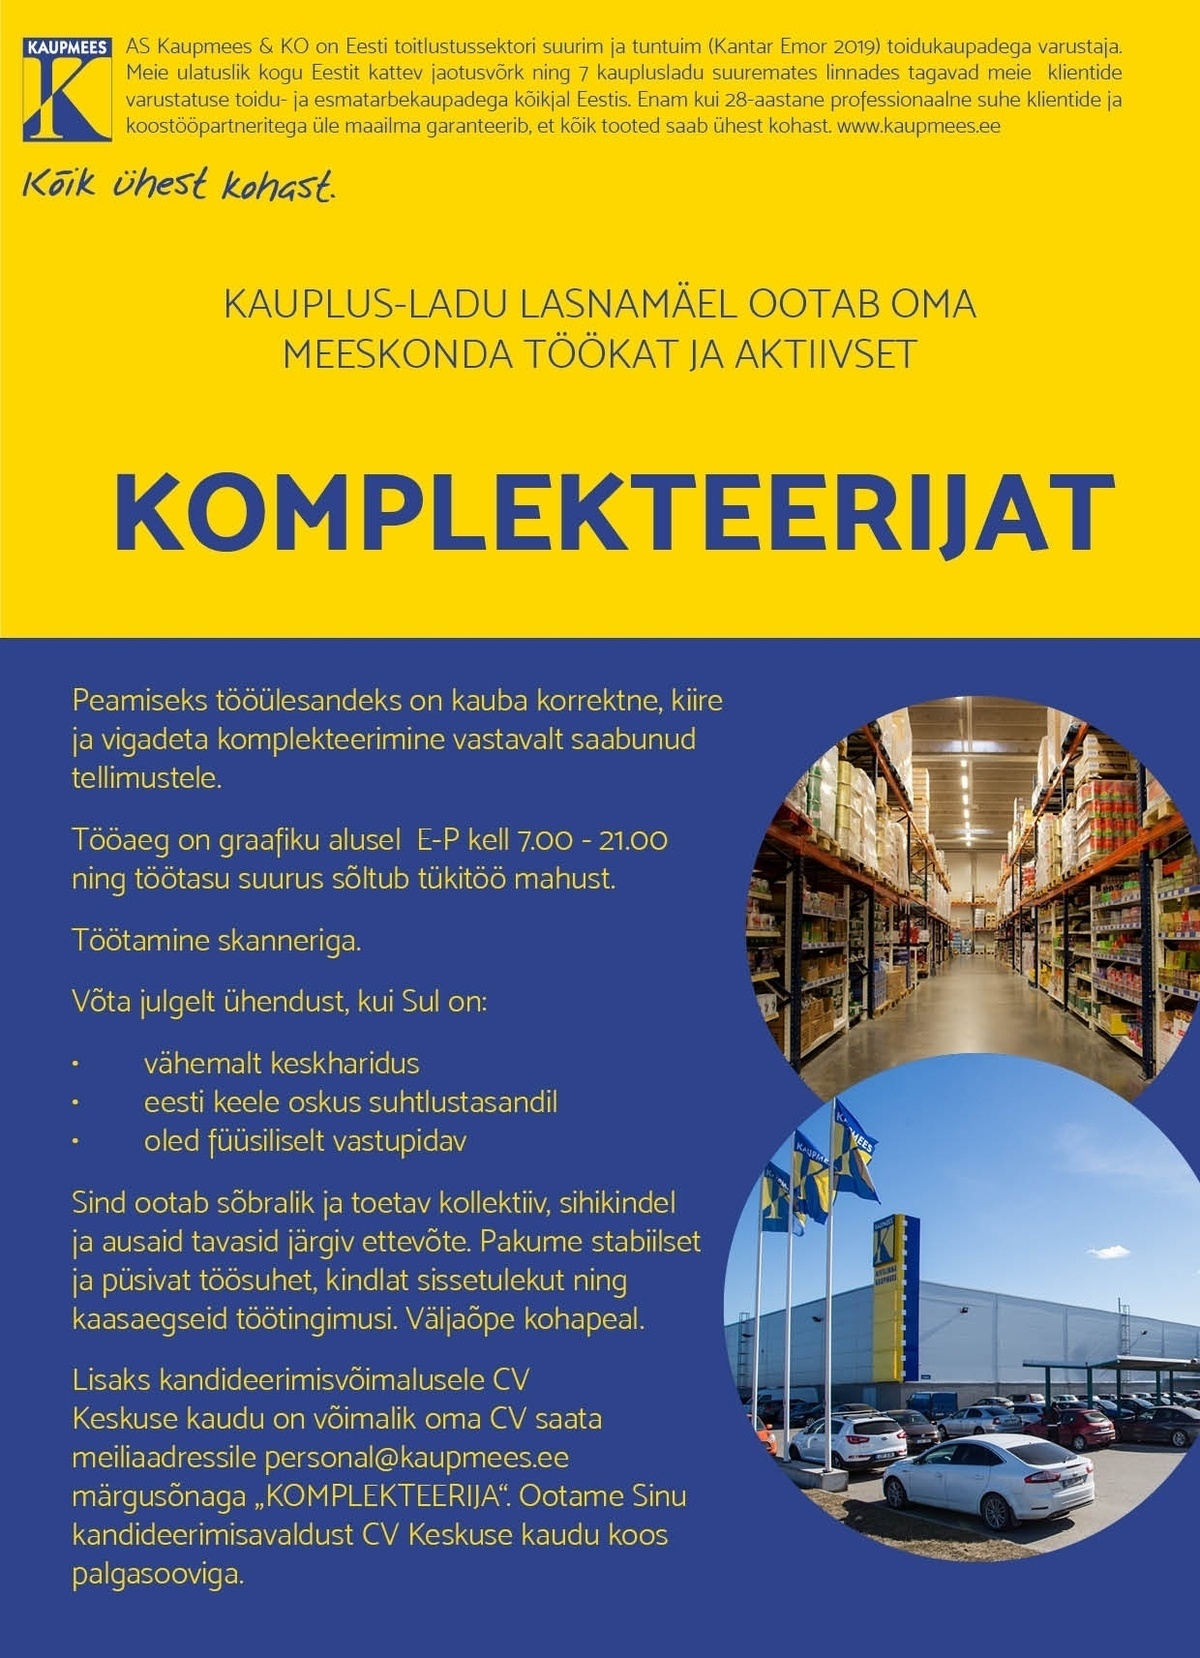 Kaupmees & Ko AS Komplekteerija Lasnamäe kauplus-lattu